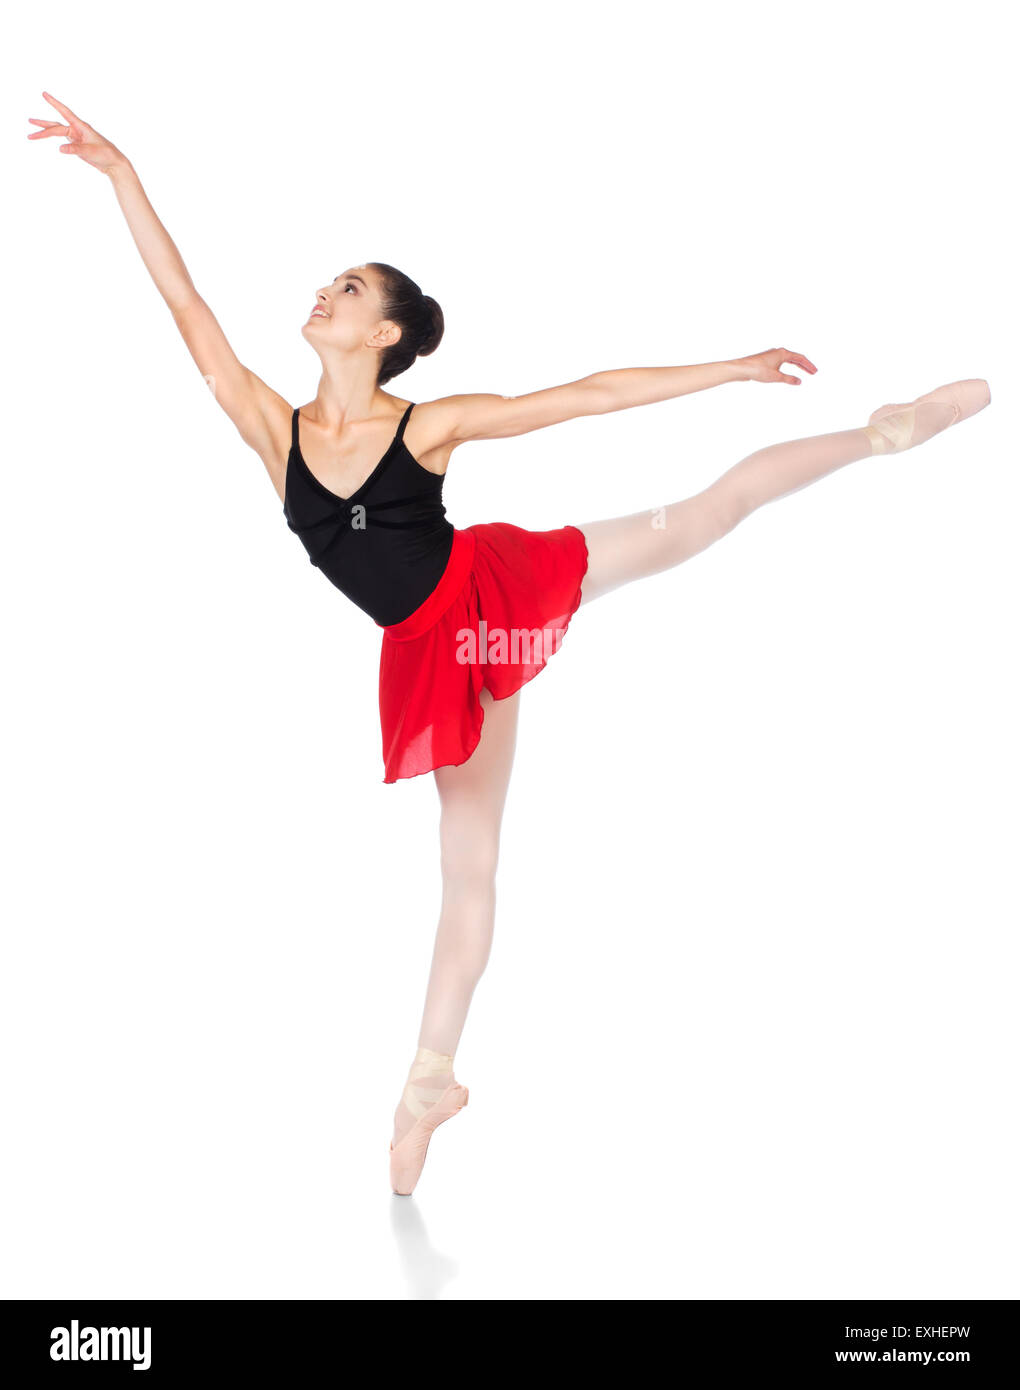 Schönen weiblichen Balletttänzer isoliert auf einem weißen Hintergrund. Ballerina trägt einen schwarzen Anzug, rosa Strümpfe, Pointe Schuh Stockfoto